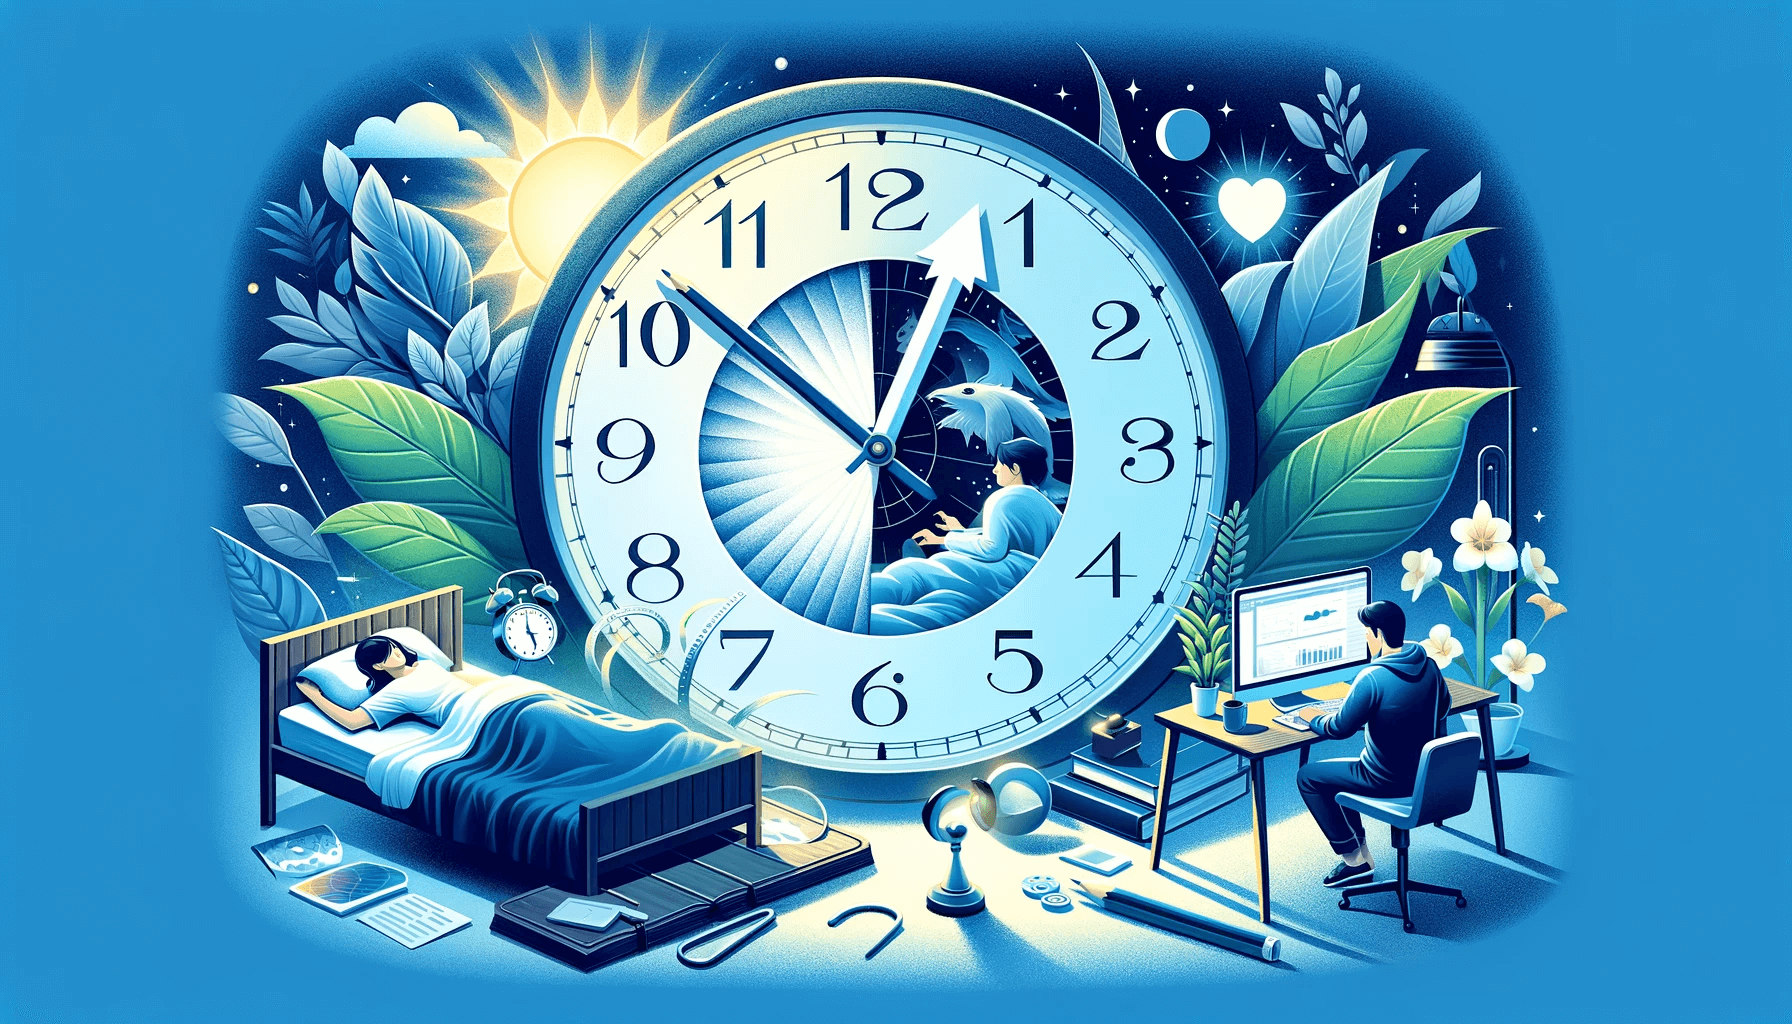 Digitális illusztráció a nyári időváltozás hatásairól az egészségre, alvásra és a termelékenységre, központi órával és különböző napszakokat ábrázoló jelenetekkel